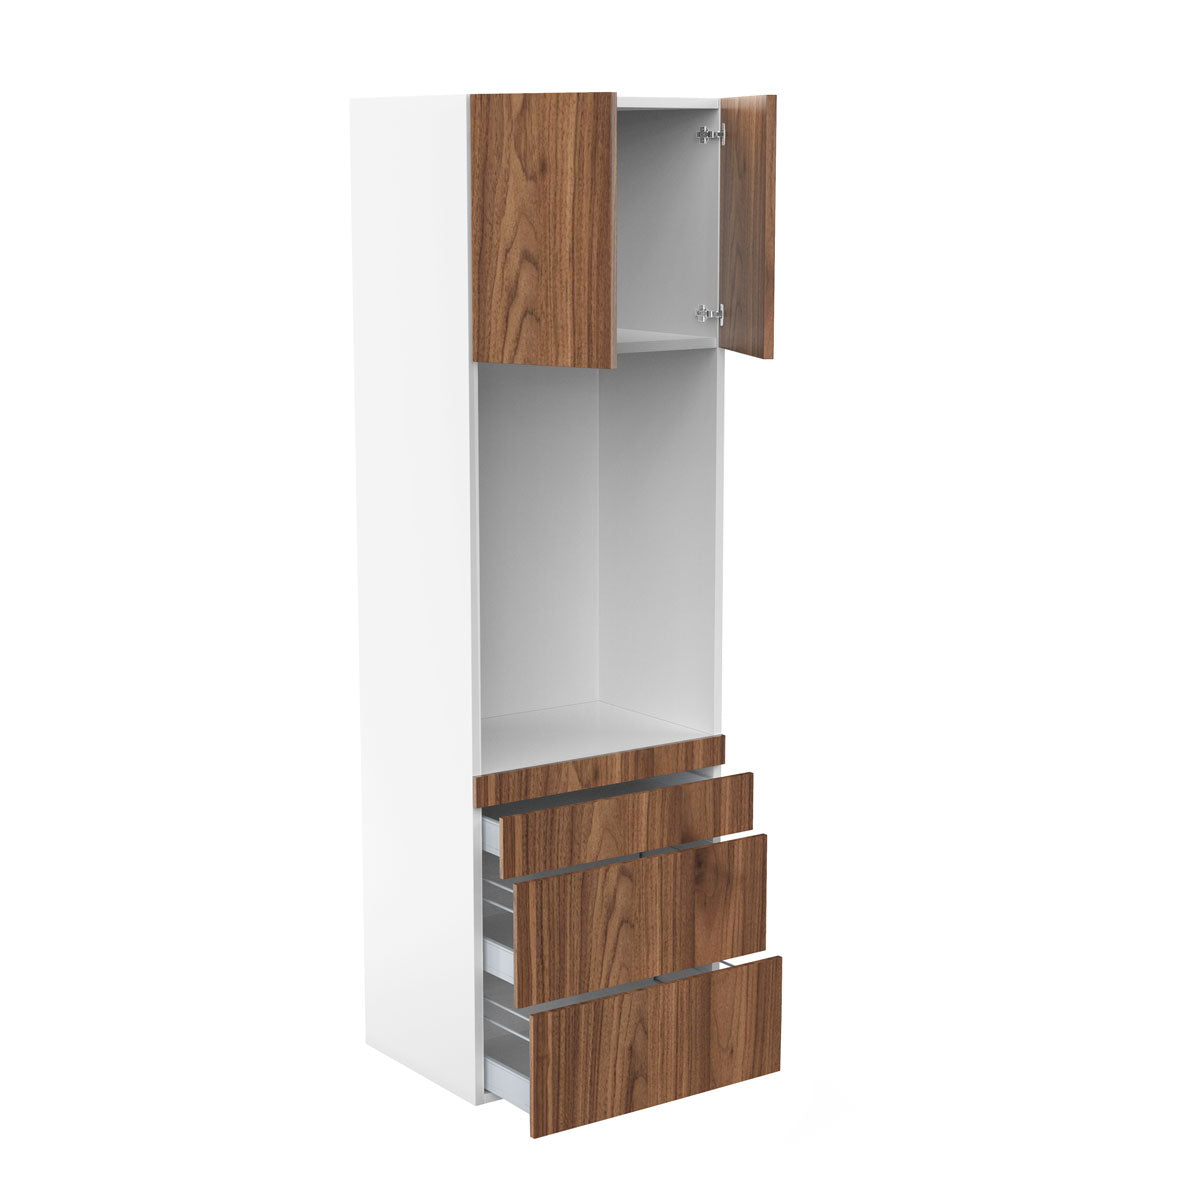 RTA - Walnut - Single Oven Tall Cabinets | 30"W x 96"H x 24"D